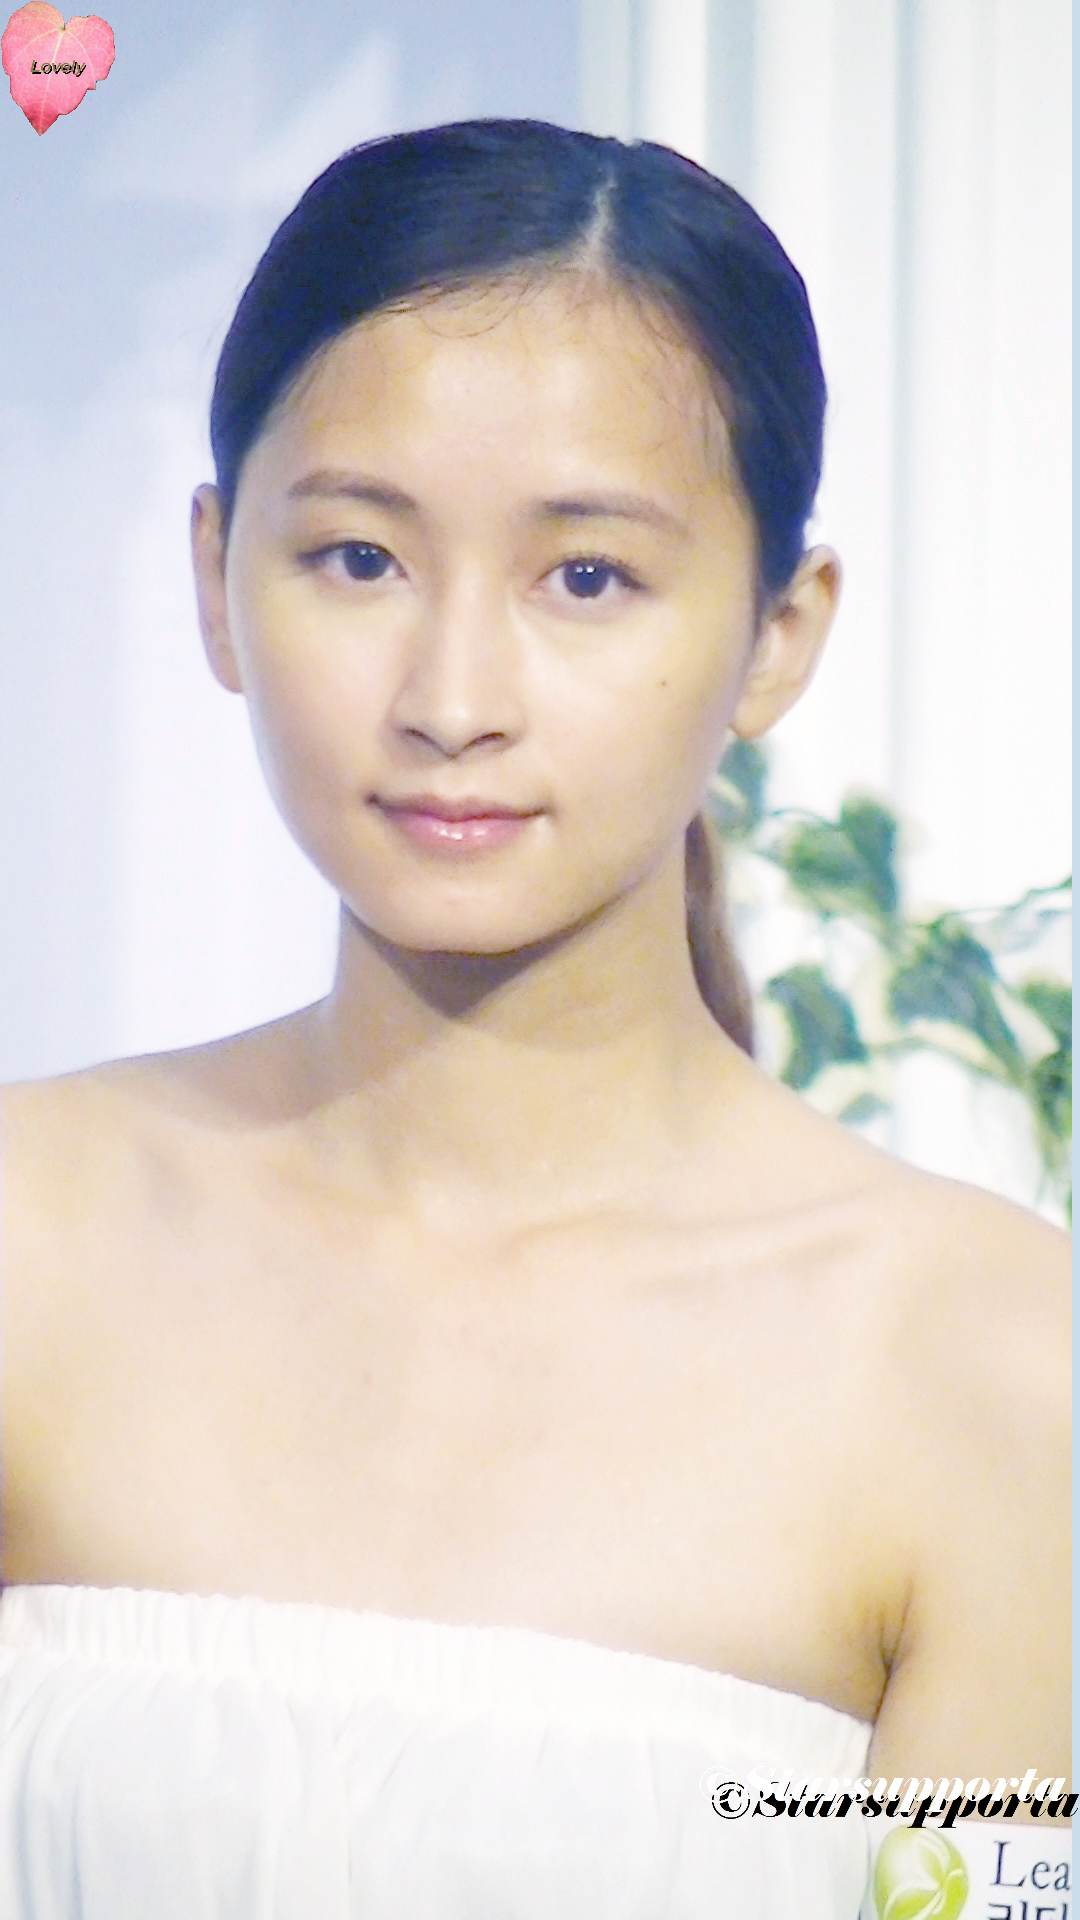 20120609 夏日婚紗、婚宴及結婚服務博覽 - Leaders skin group & clinic: 新娘化妝示範 @ 香港會議展覽中心 HKCEC 